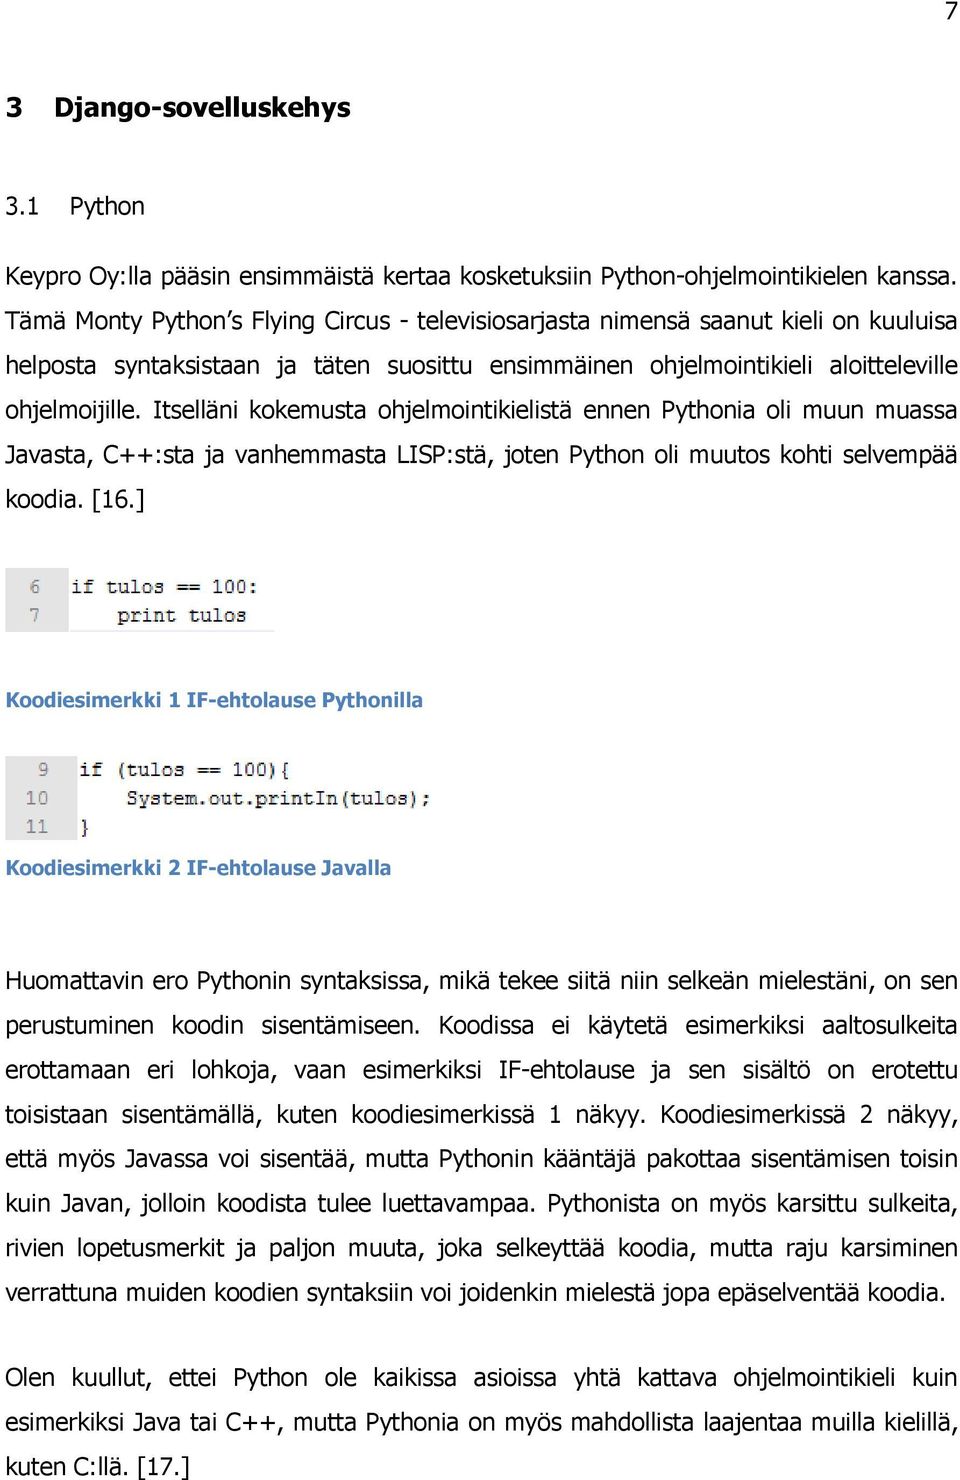 Itselläni kokemusta ohjelmointikielistä ennen Pythonia oli muun muassa Javasta, C++:sta ja vanhemmasta LISP:stä, joten Python oli muutos kohti selvempää koodia. [16.